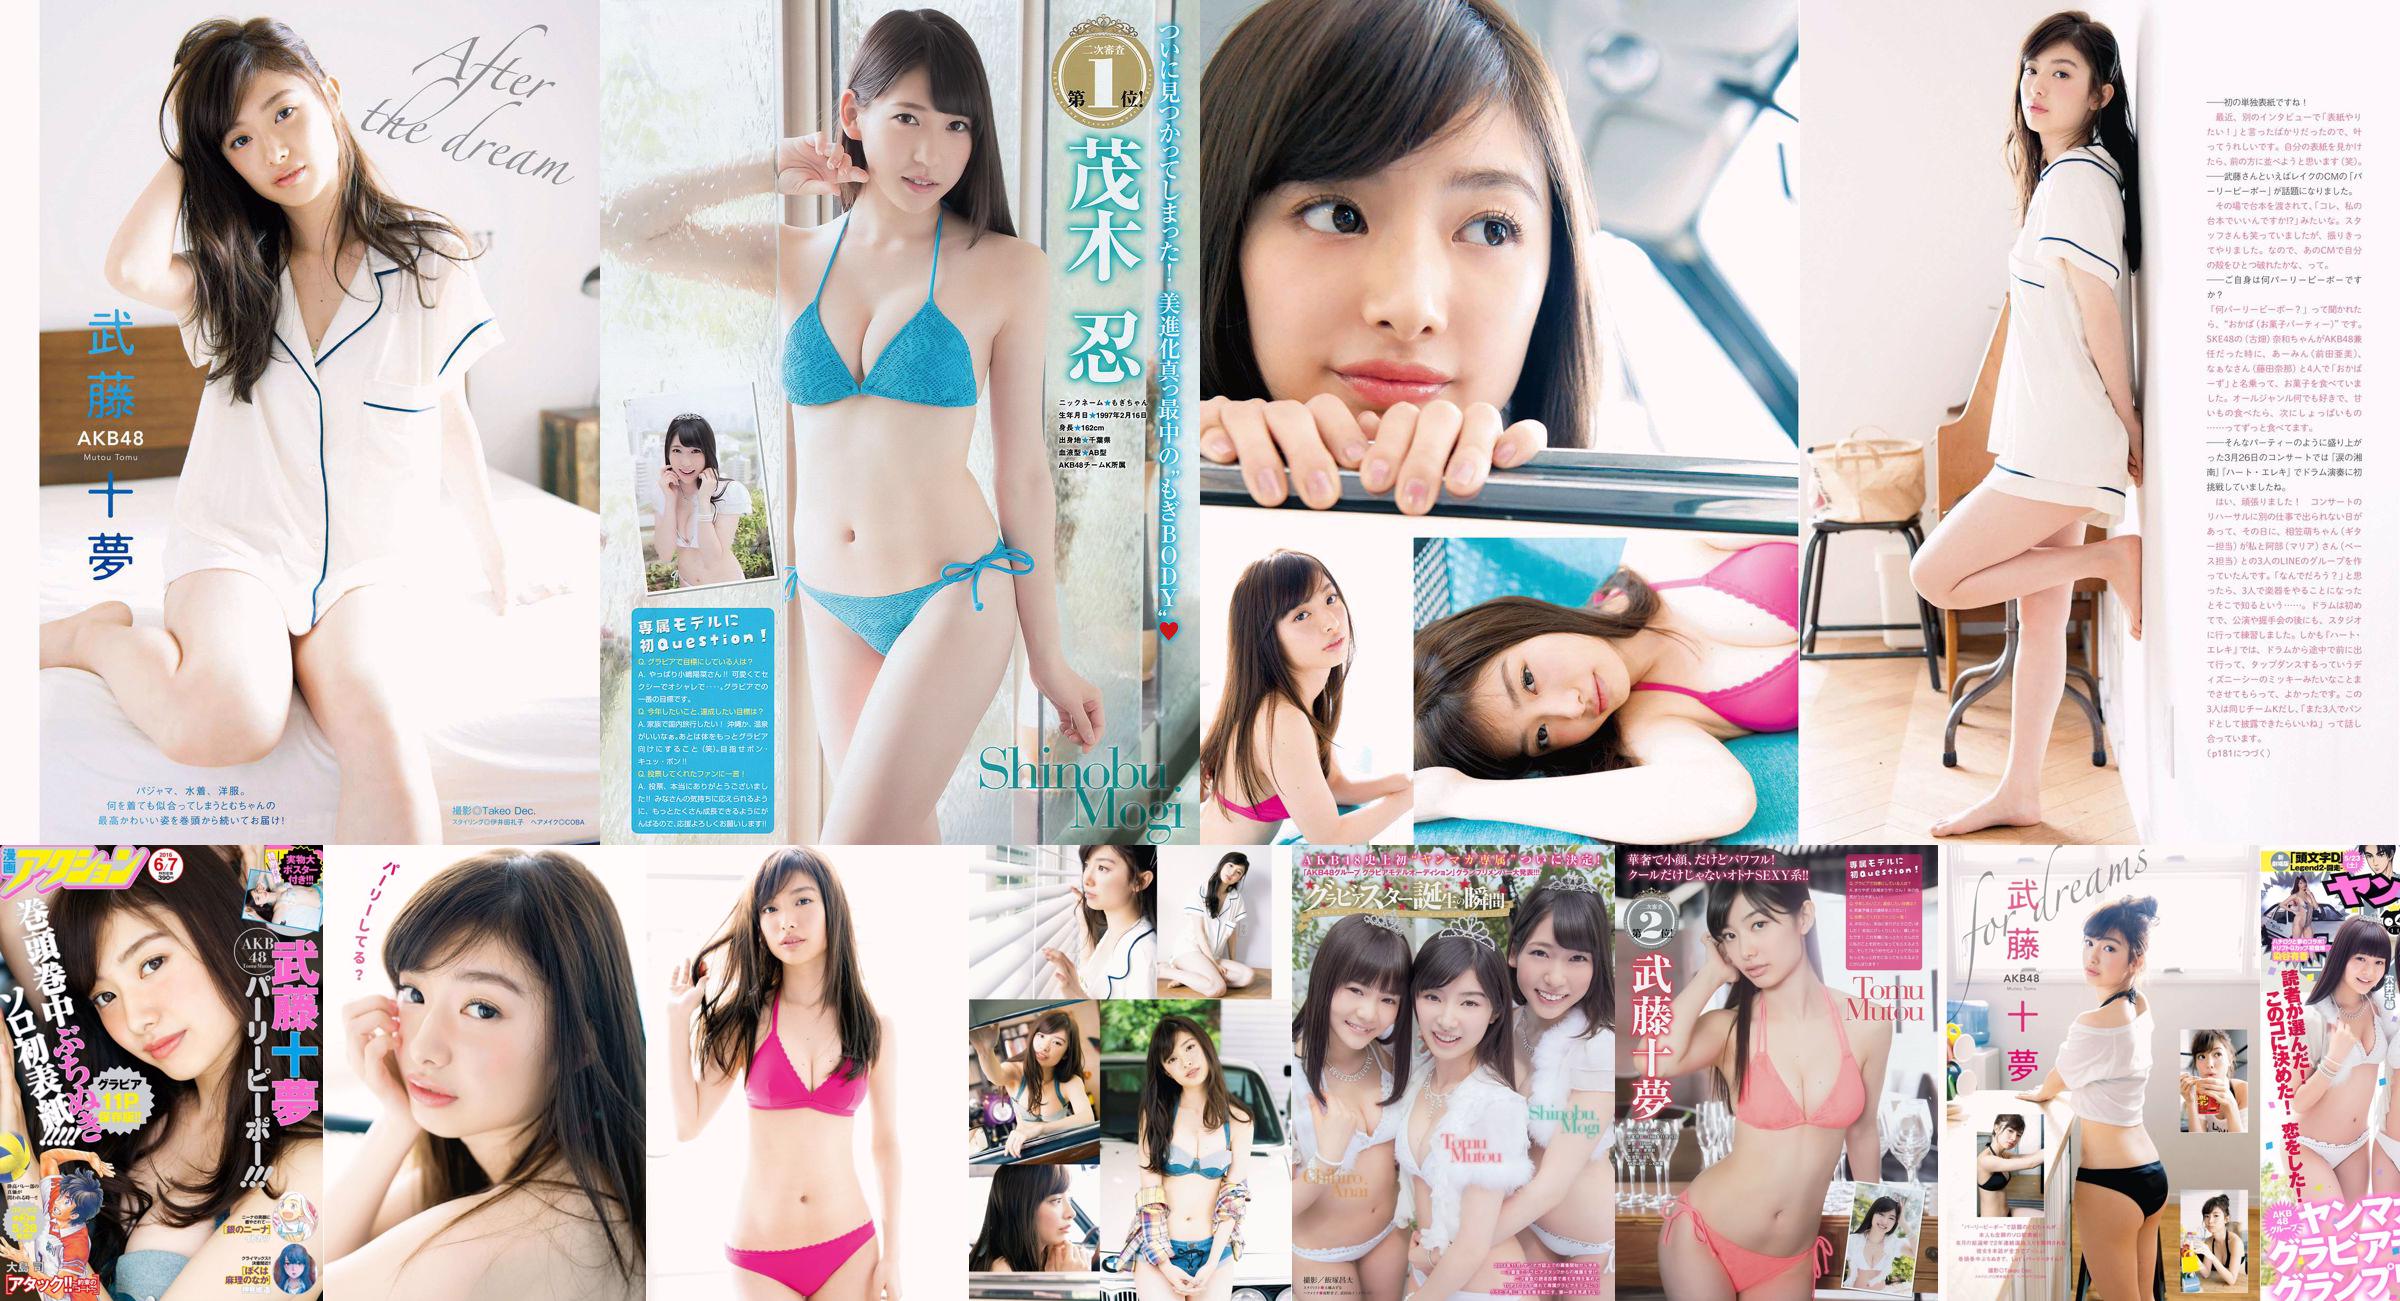 [Young Magazine] Tomu Muto Shinobu Mogi Chihiro Anai Erina Mano Yuka Someya 2015 No.25 Foto No.69d3c7 Pagina 1